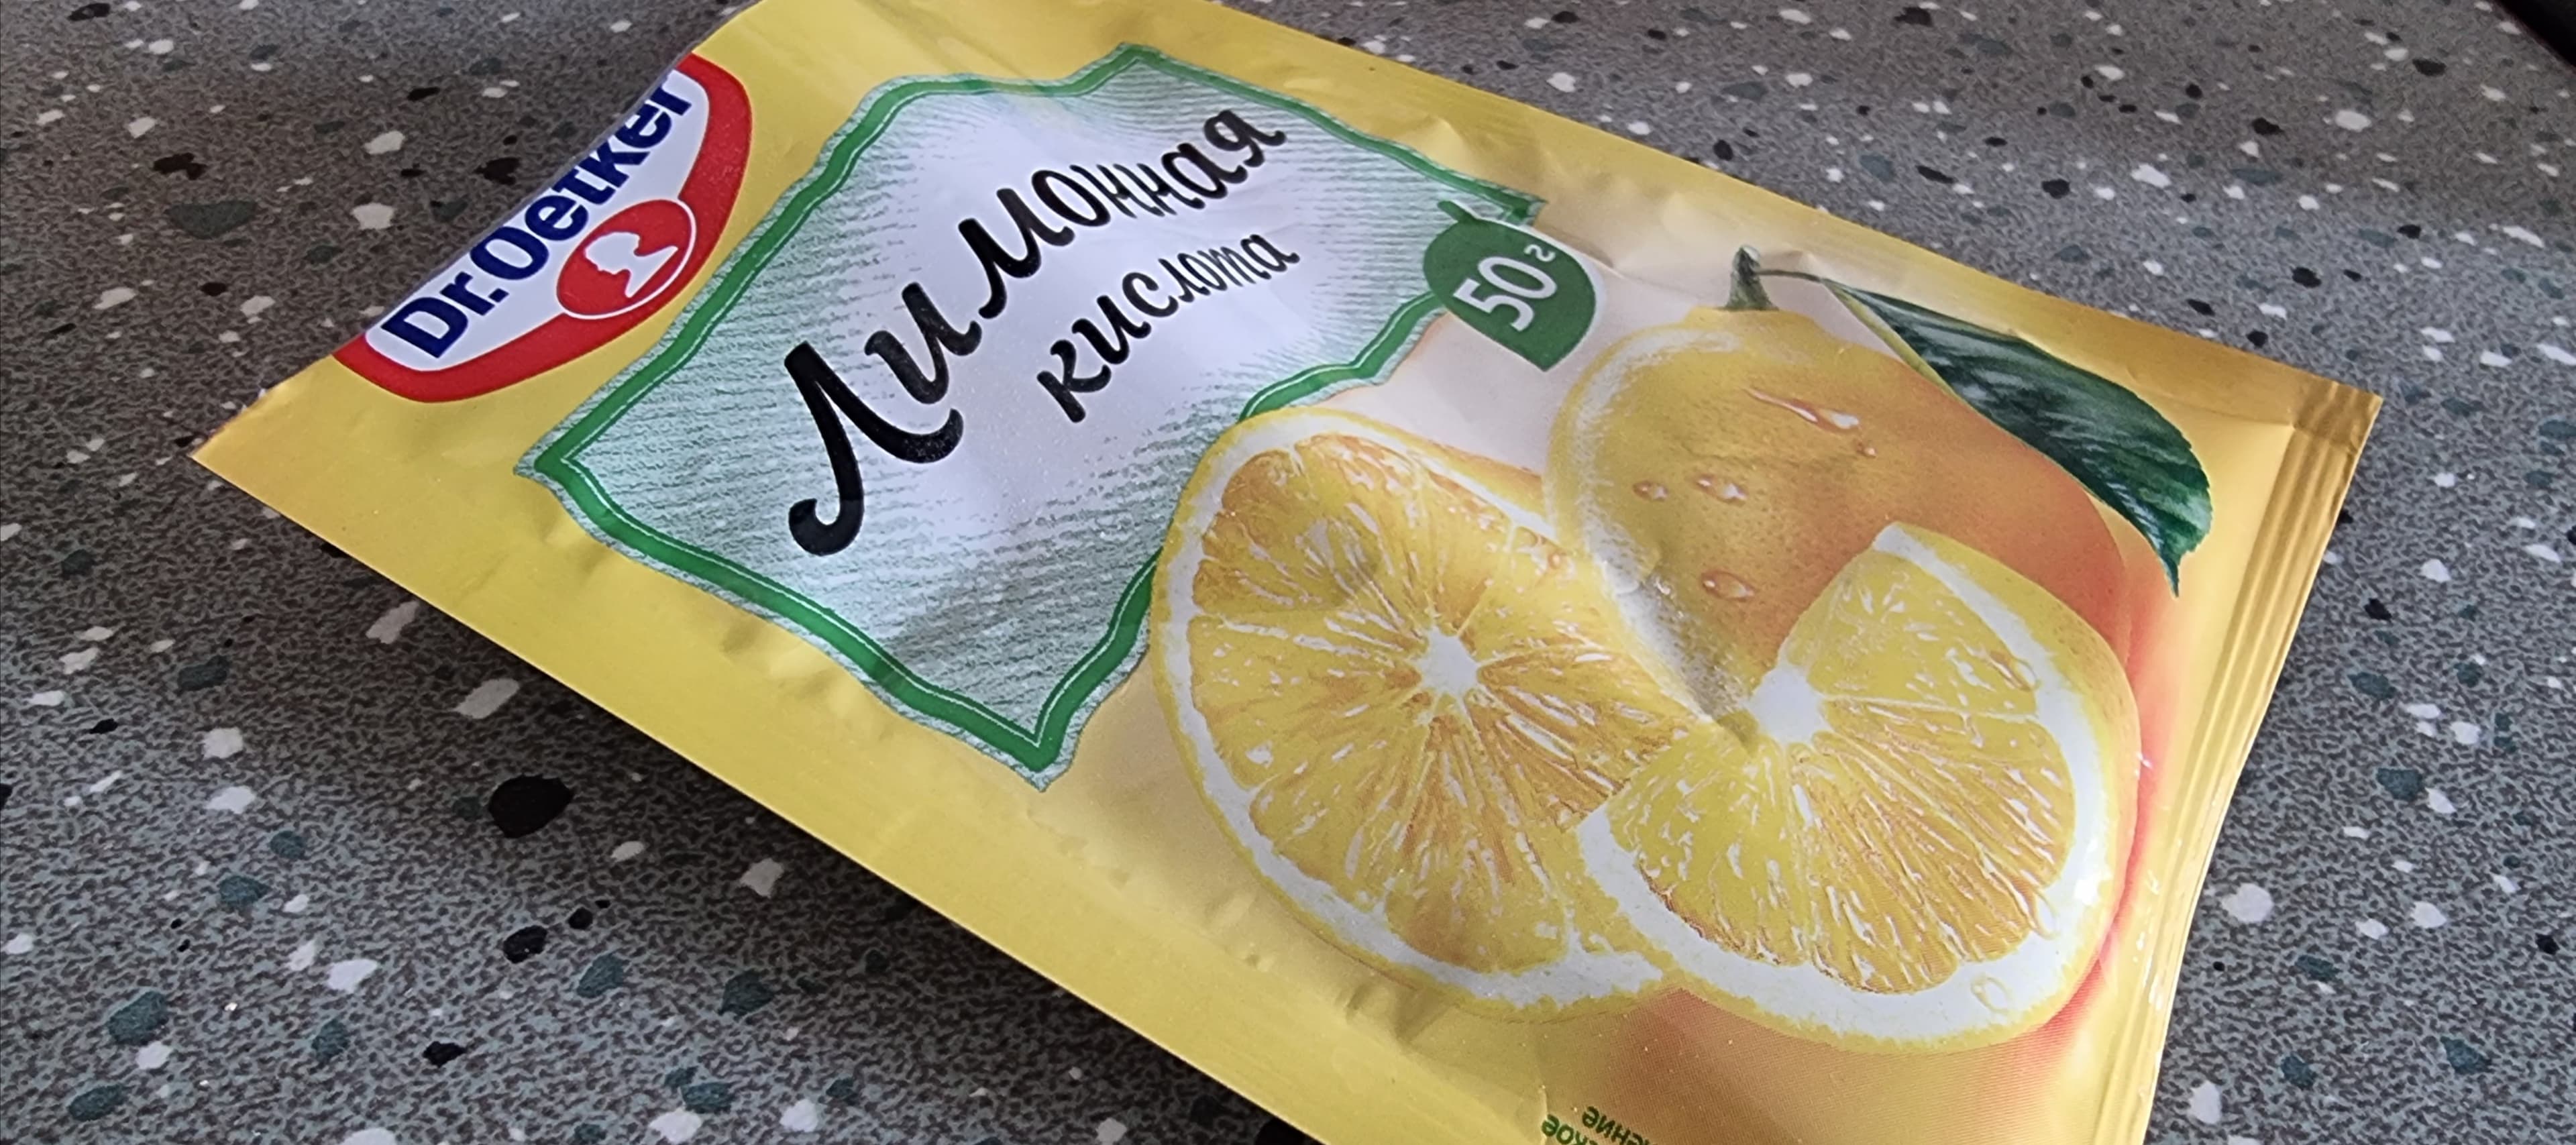 Фото новости: "Девелопер ФСК займется производством лимонной кислоты"